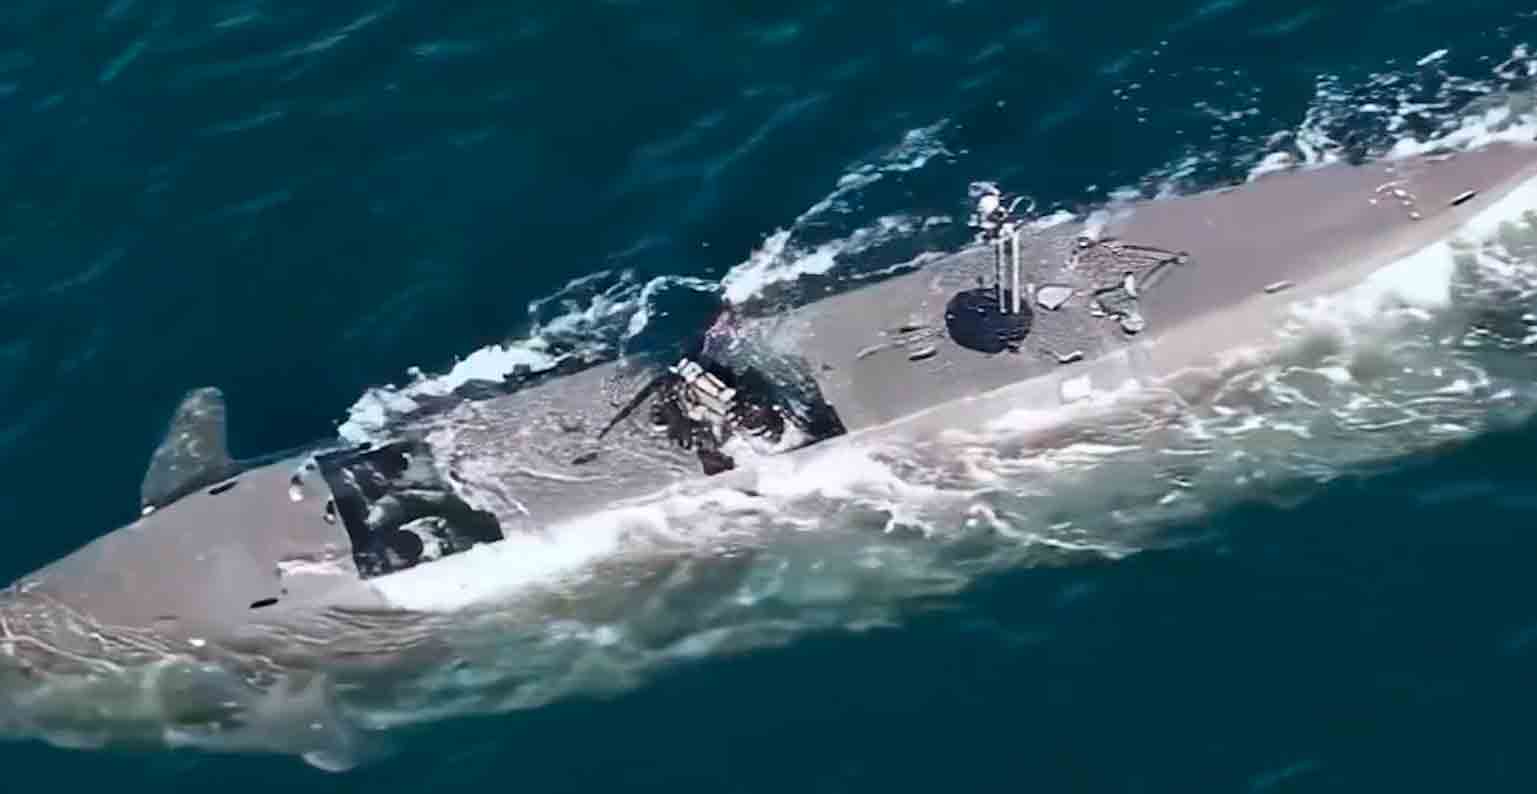 Un video dell'esercito svedese mostra una barca delle forze speciali che può operare come un sottomarino